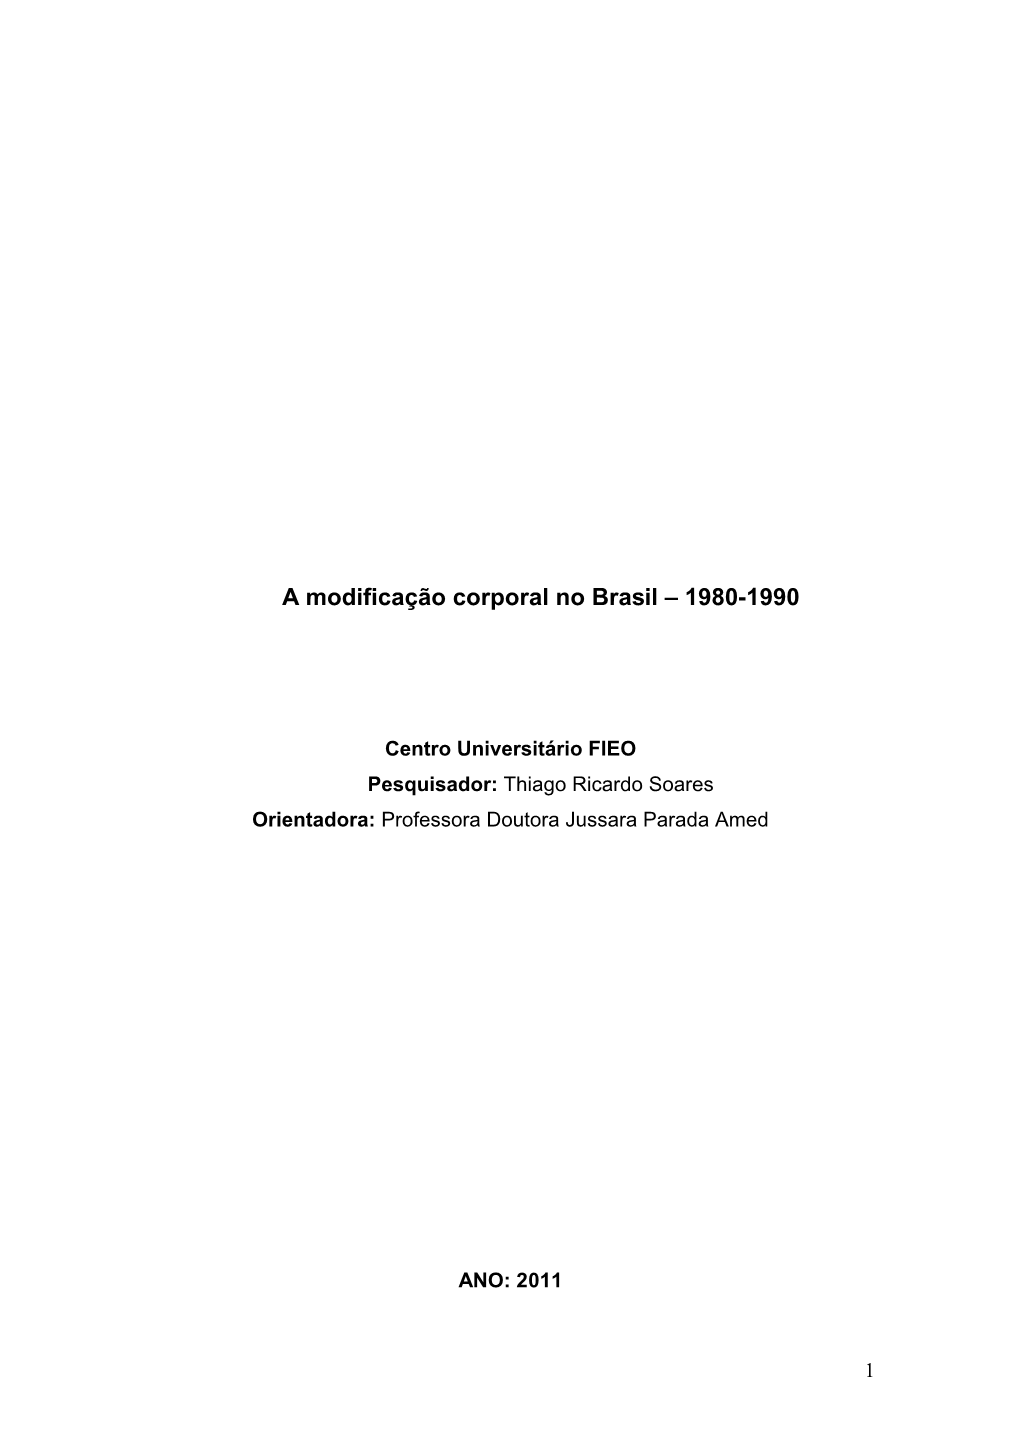 A Modificação Corporal No Brasil – 1980-1990